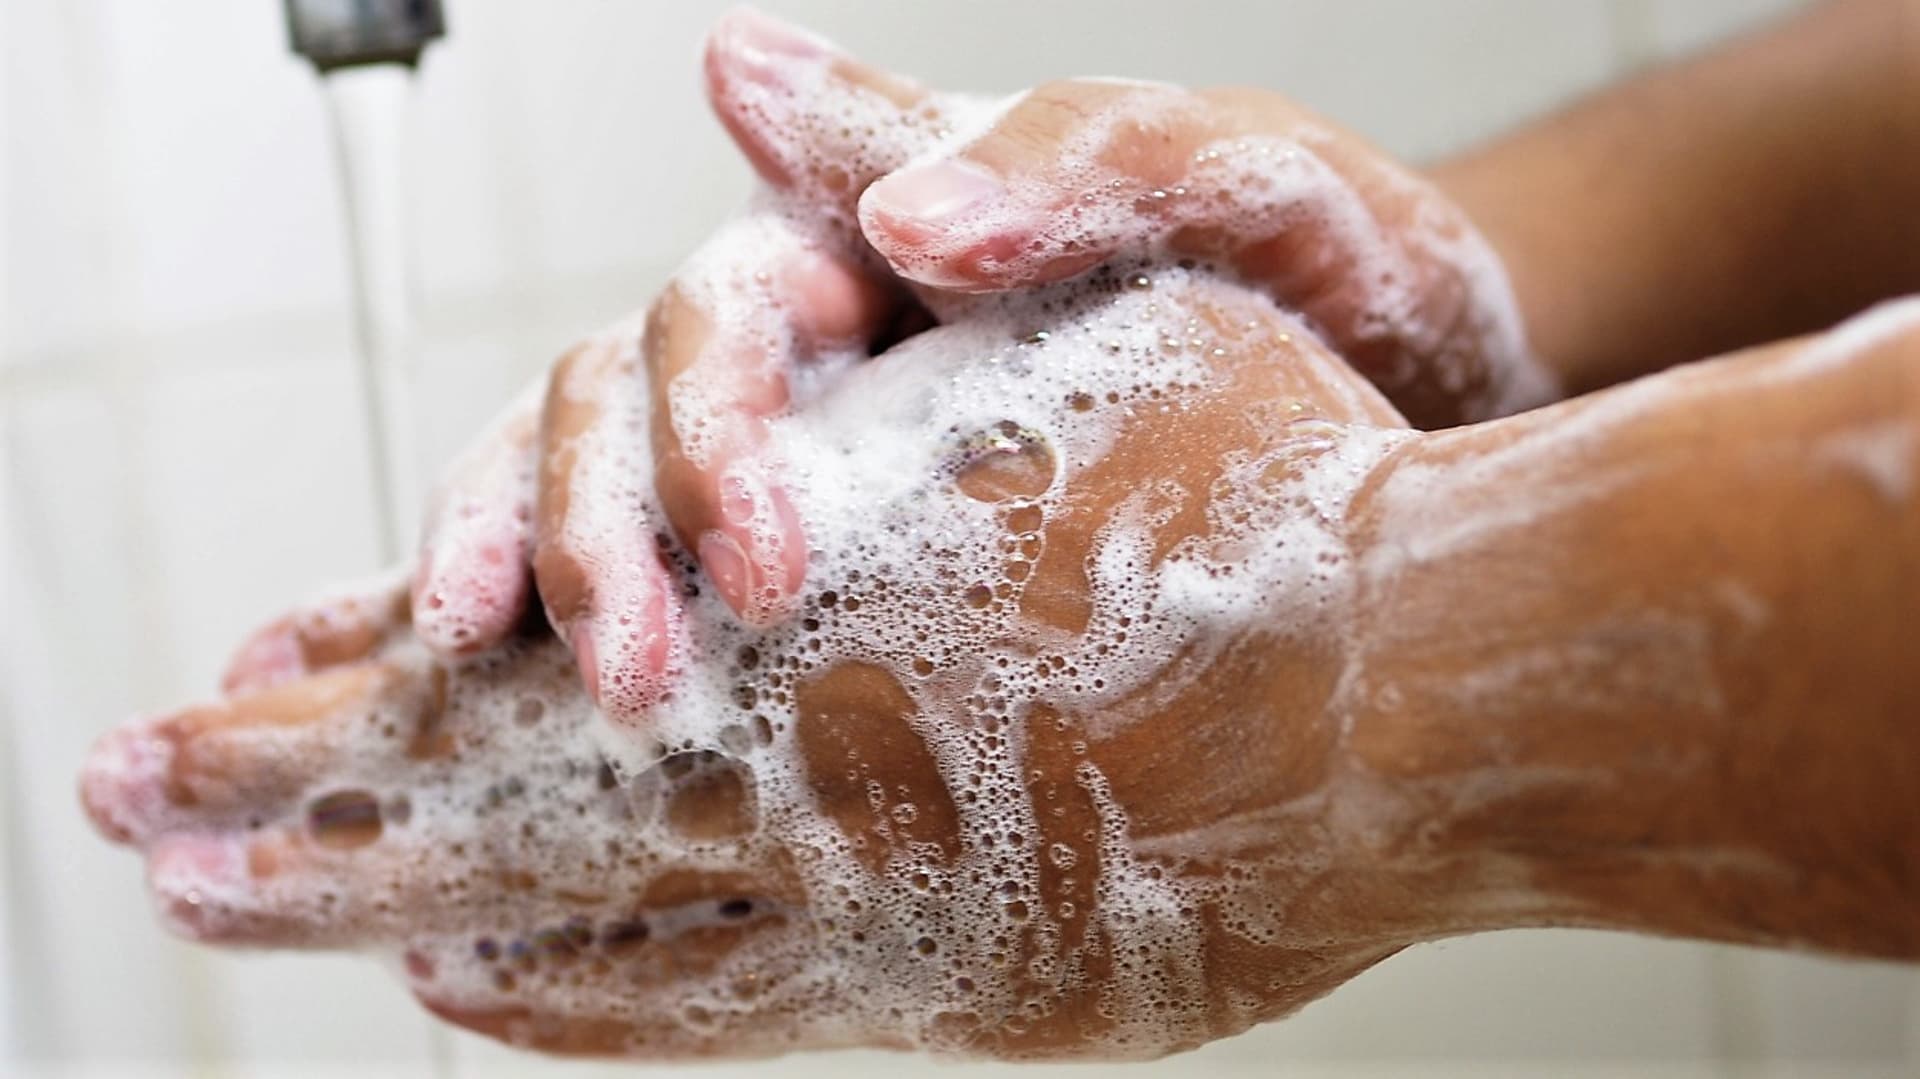 Klasické tuhé mýdlo dnes používáme čím dál méně, oblíbenější je mýdlo tekuté